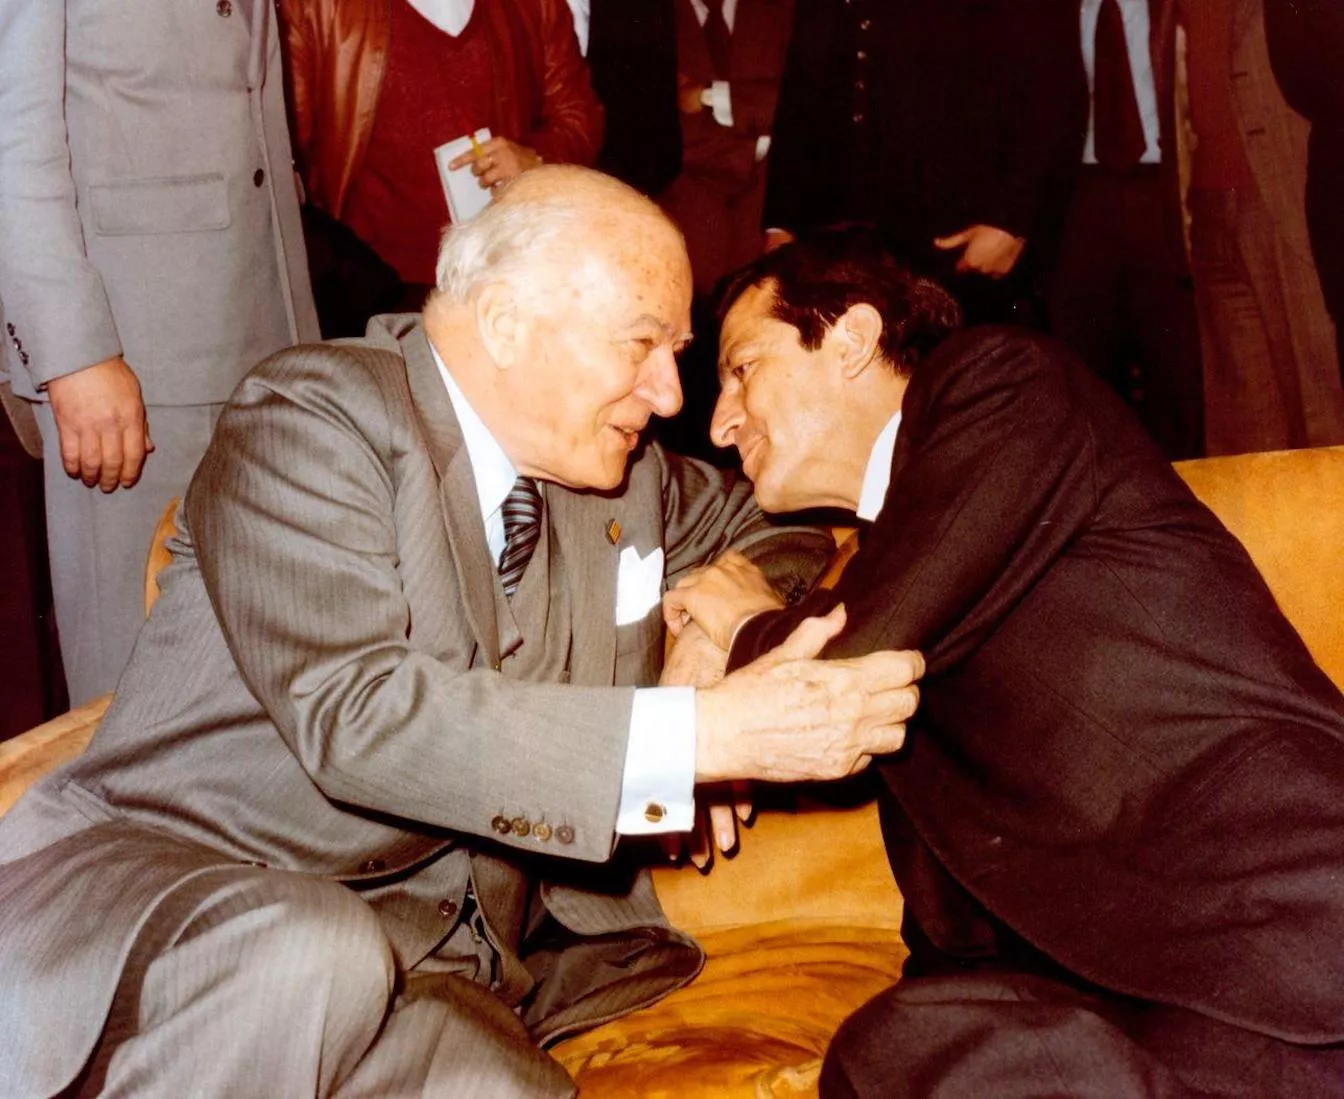 El 23 d'octubre de 1977, Josep Tarradellas va tornar a Catalunya. A la foto, els dos polítics es donen la mà